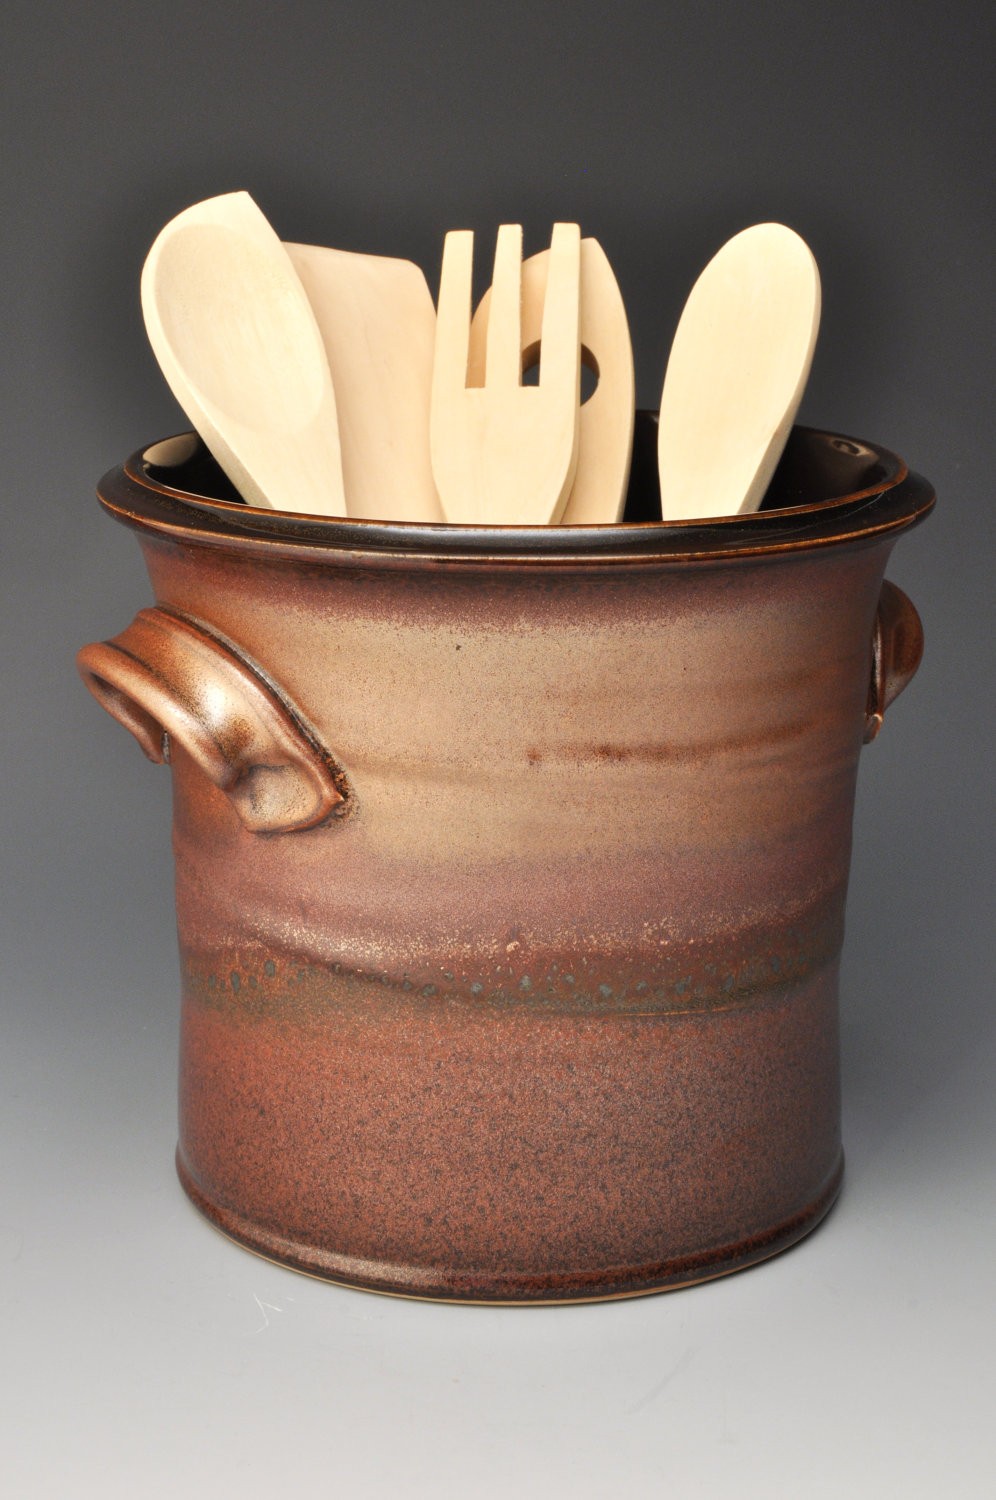 utensils holder pottery pot handmade utensils holder pottery utensils holder cultery dryer Ceramic utensils holder green kitchenware